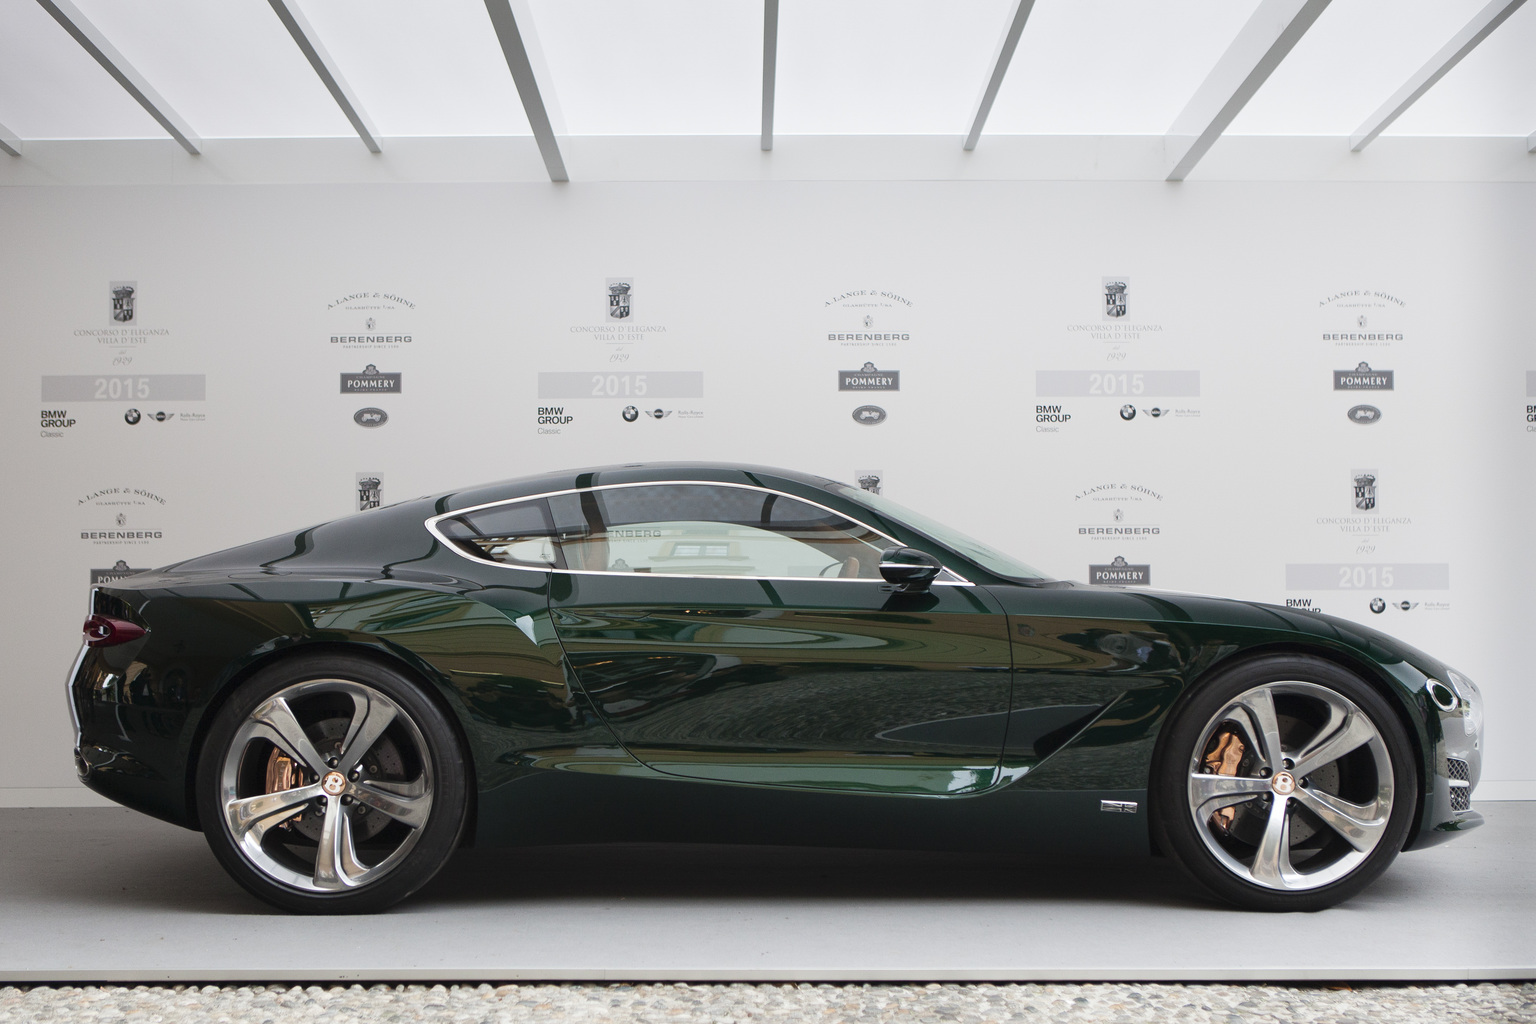 2015 Bentley EXP 10 Speed 6 Gallery